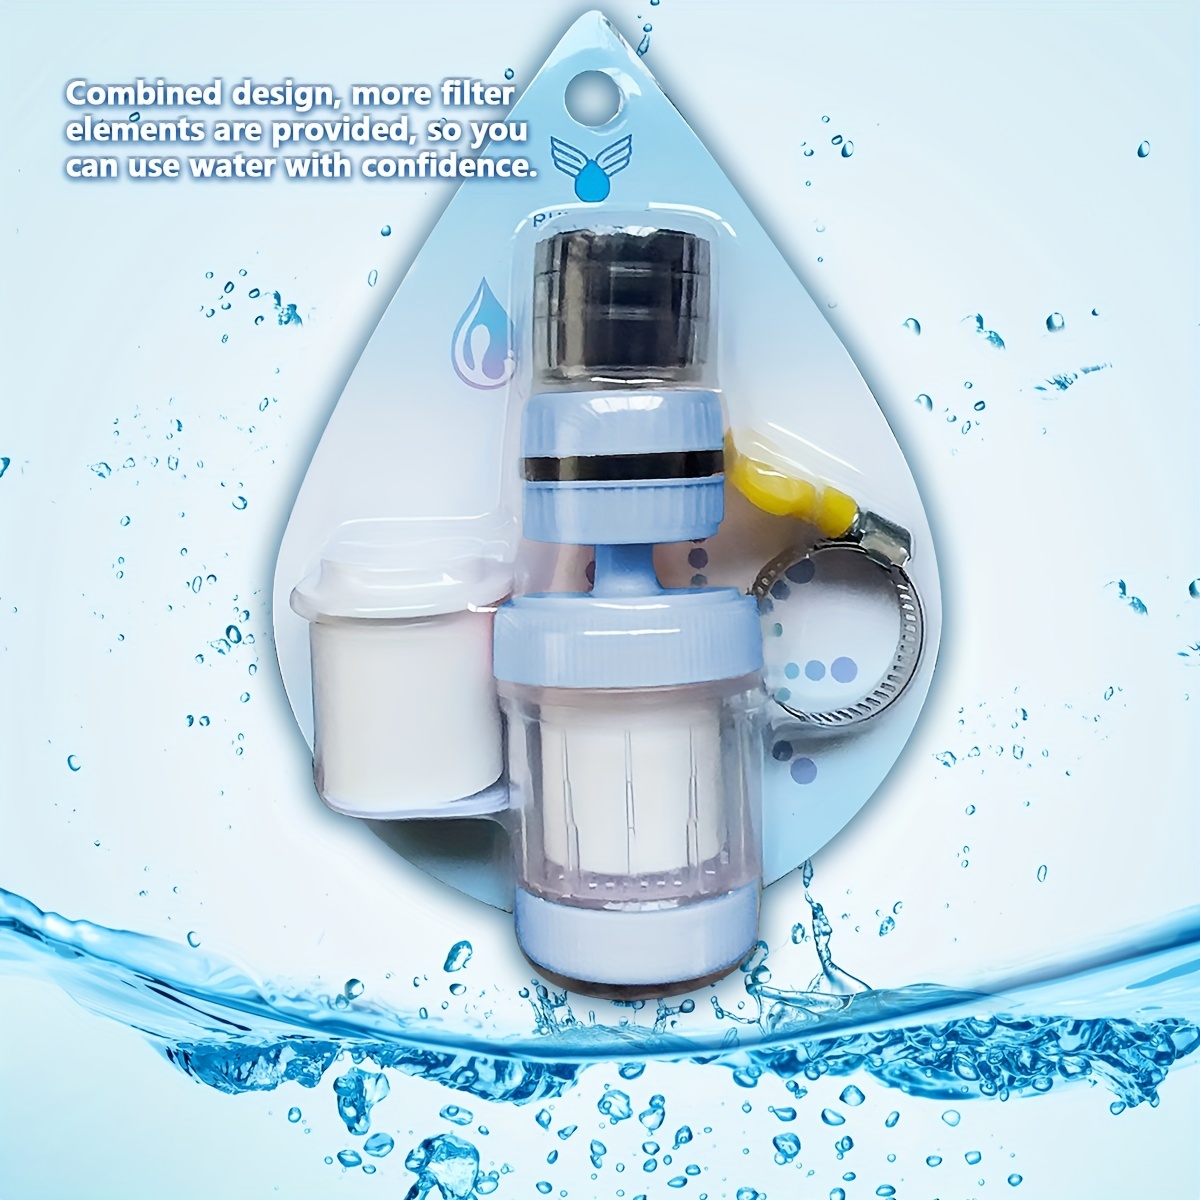 Philips Water - Filtro de ducha en línea - Reduce el cloro hasta en un 99%,  Fácil de instalar, apto para todas las mangueras y grifos de ducha